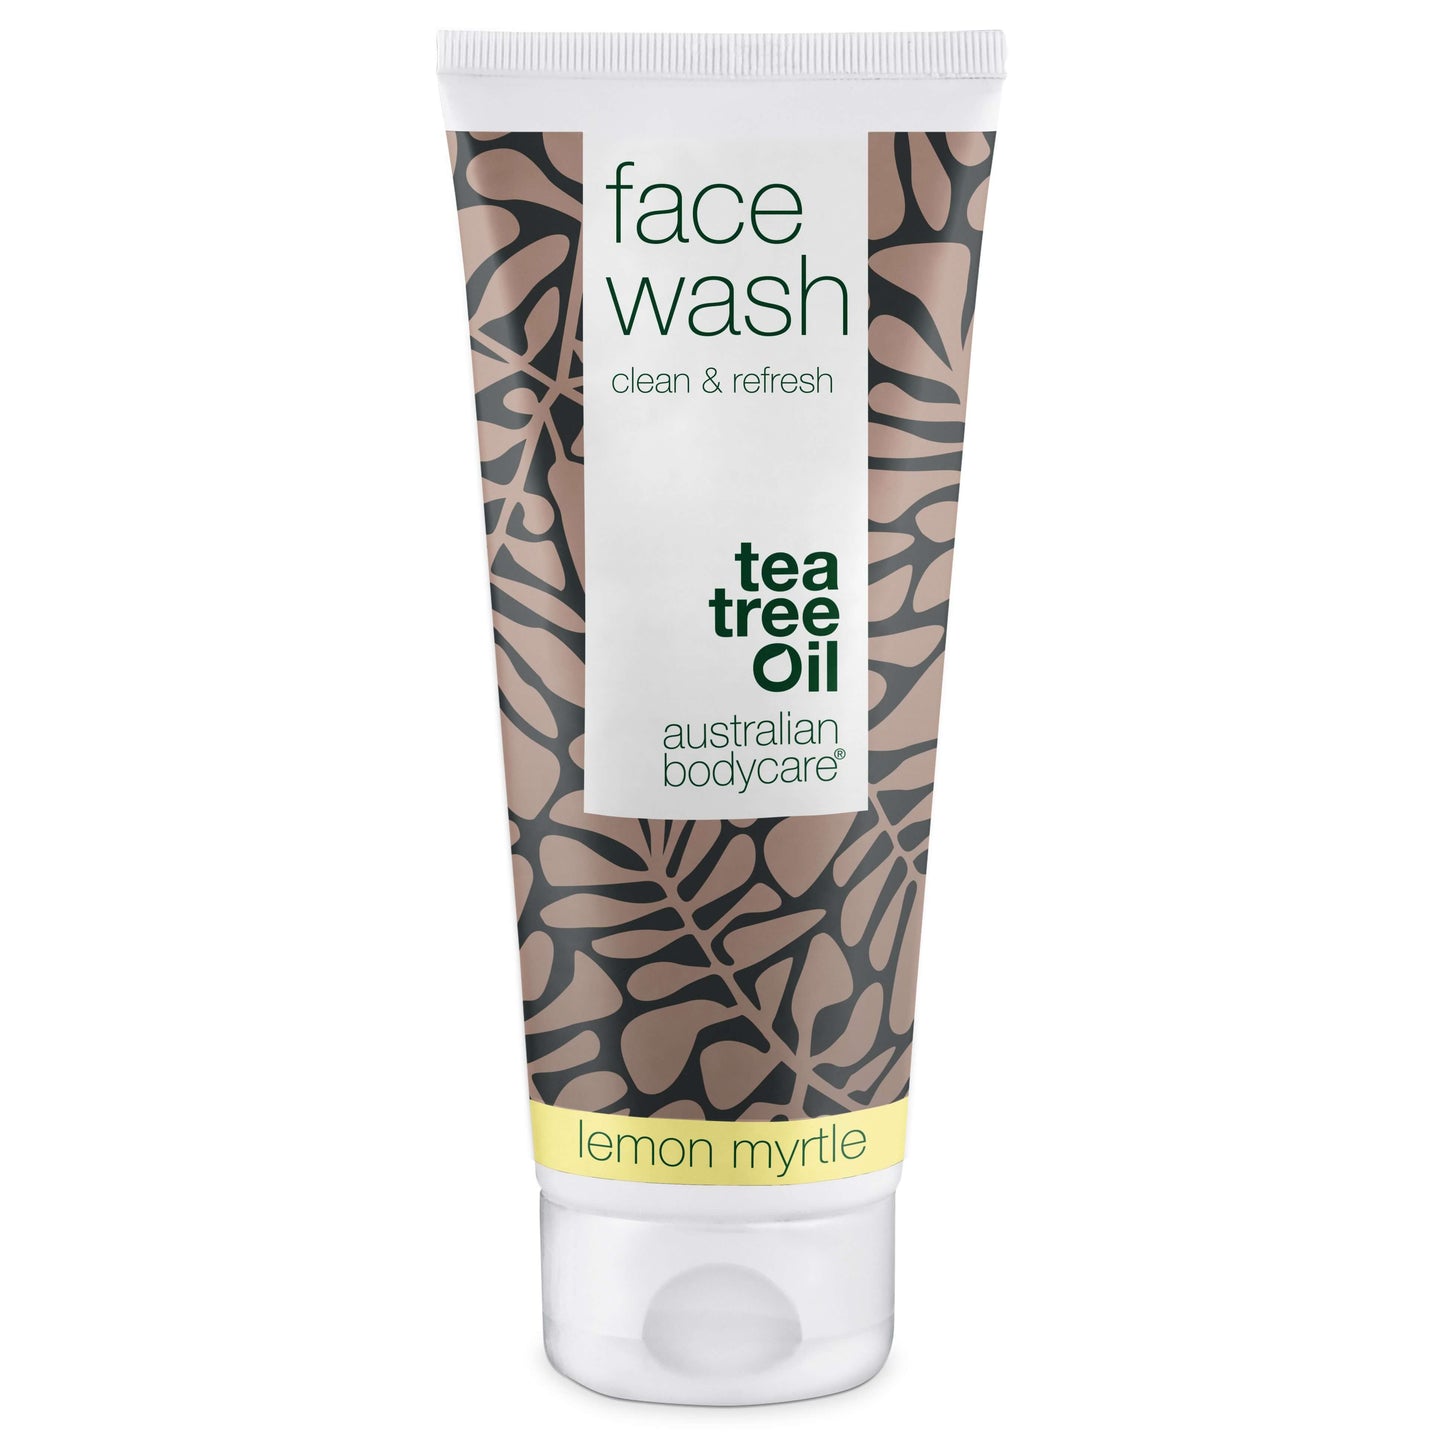 Anti Pickel Waschgel mit Teebaumöl - Gesichtsreinigung bei unreiner, trockener Haut, Pickel & Mitesser im gesicht